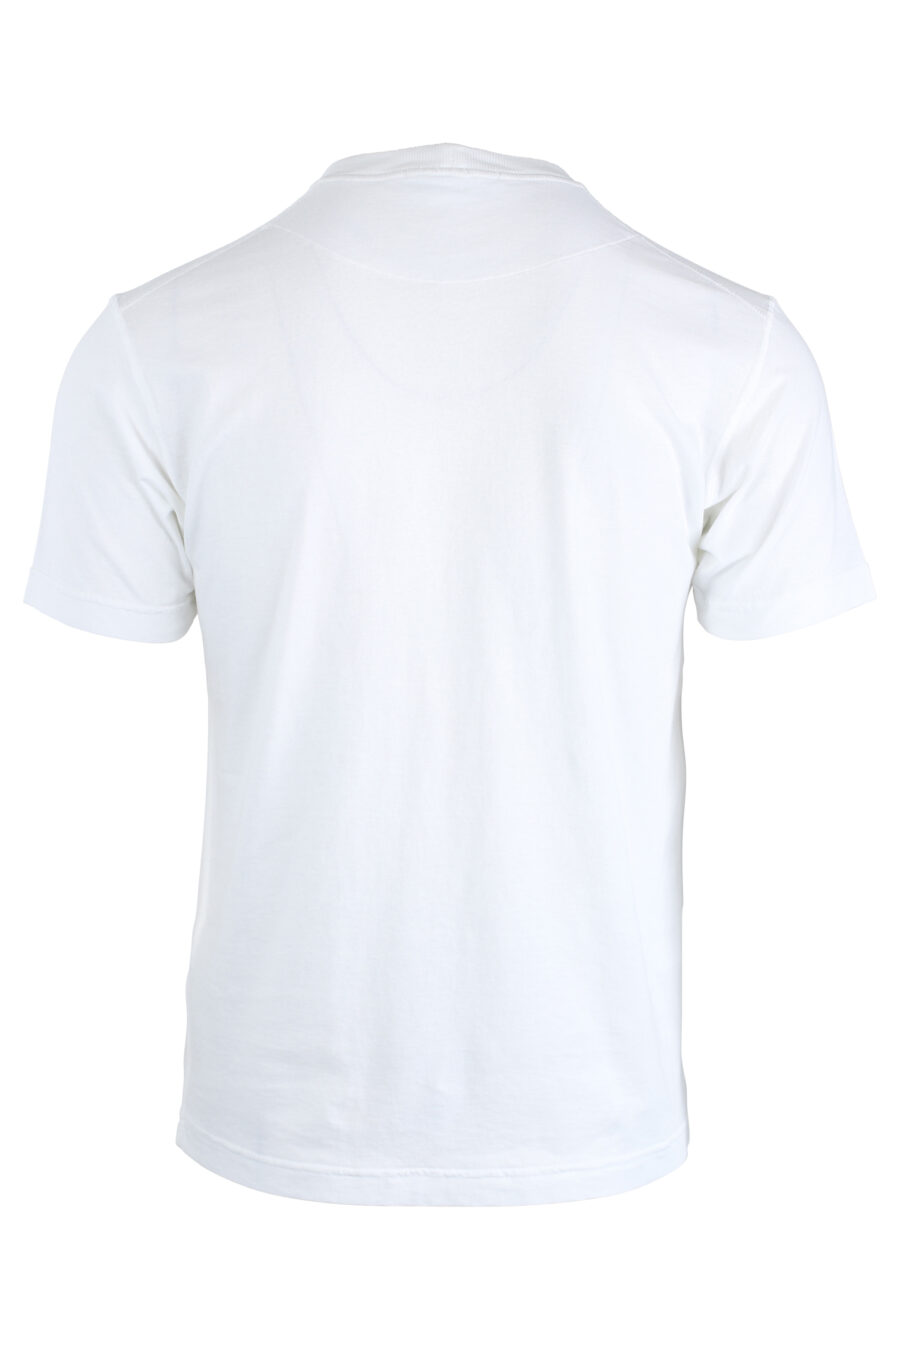 Weißes T-Shirt mit Tasche - IMG 1686